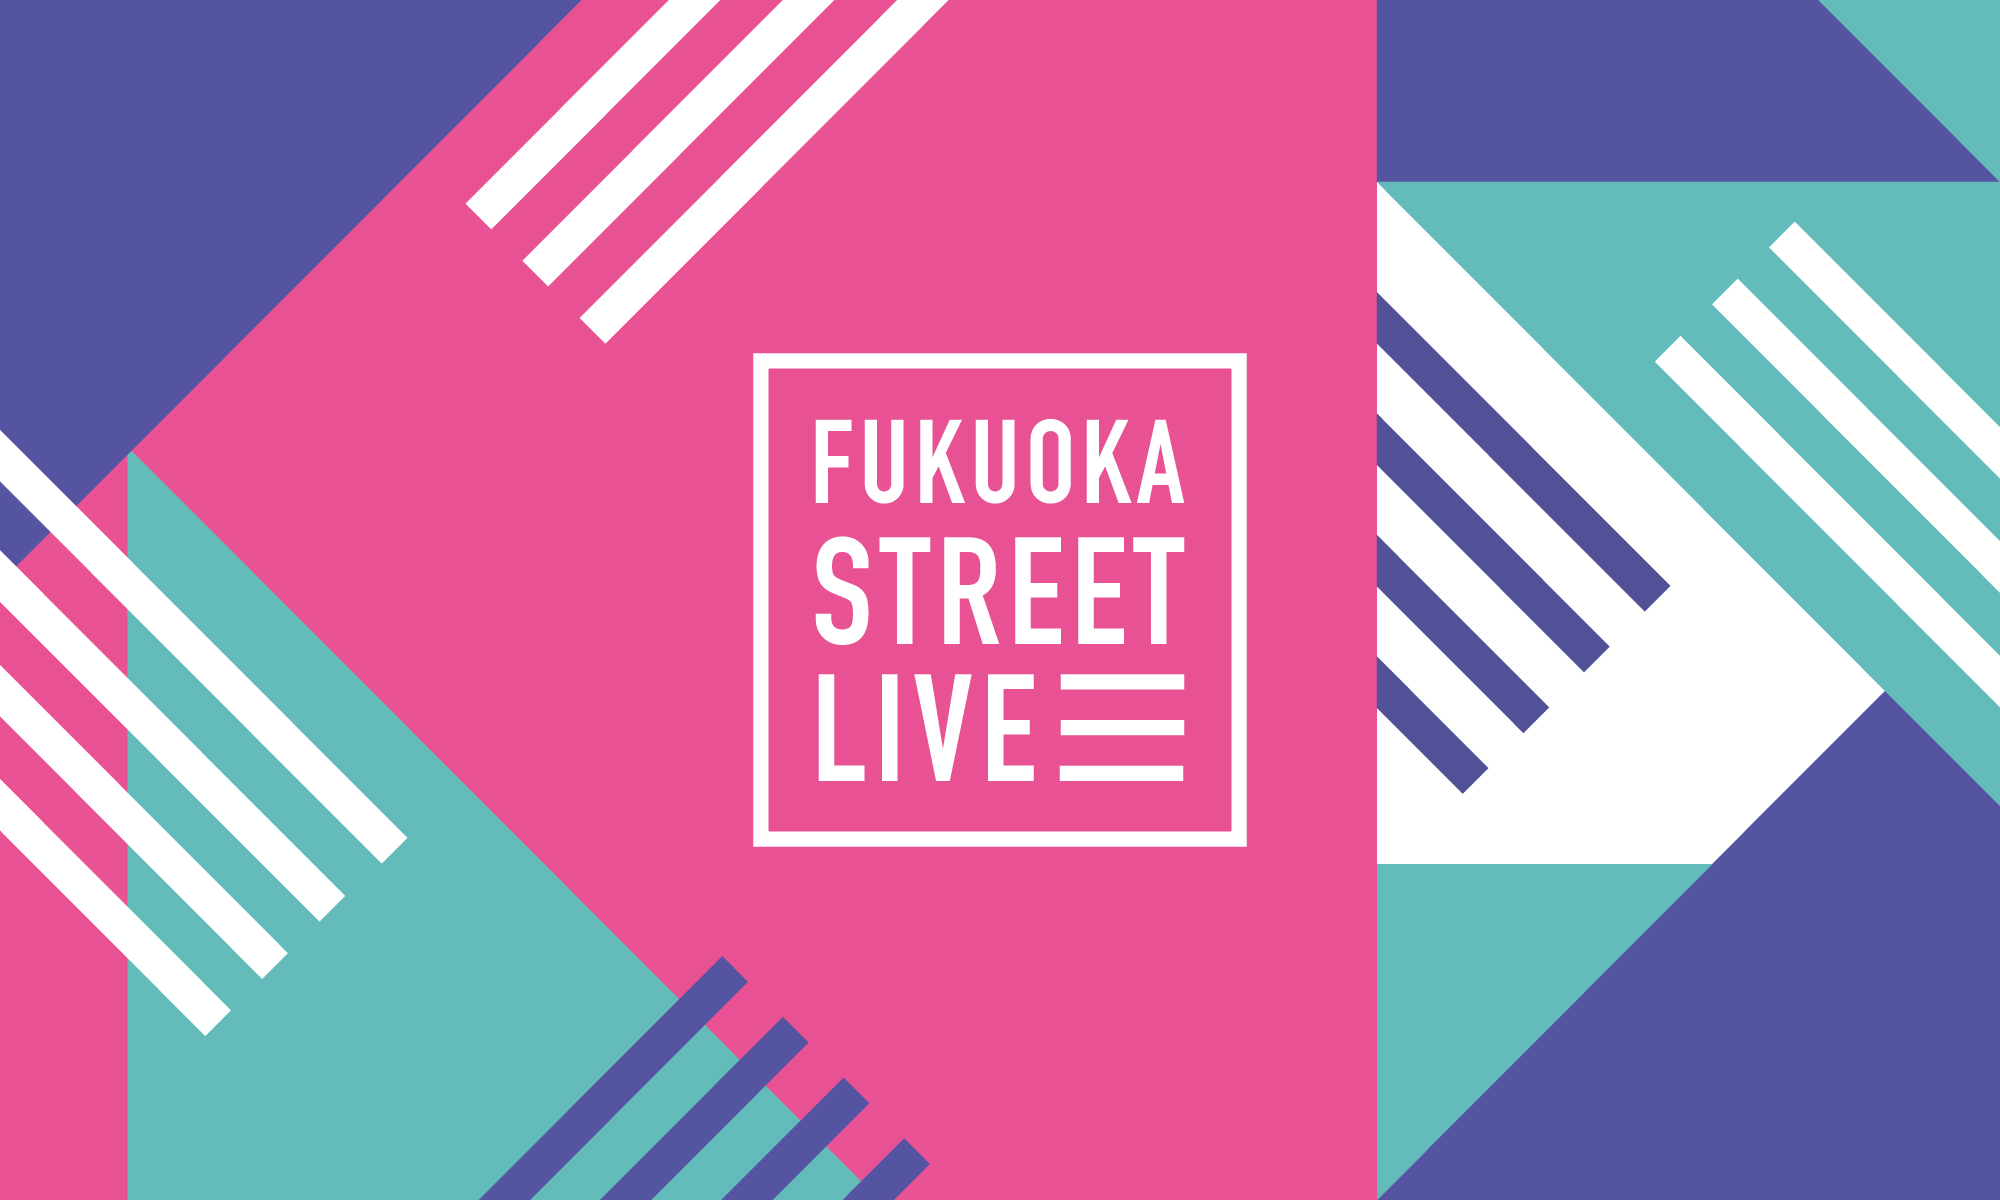 福岡 福岡市主催のアーティスト支援プロジェクト Fukuoka Street Live のオープニングイベント 10月24日よりキャナルシティ博多にて開催 クリップ九州